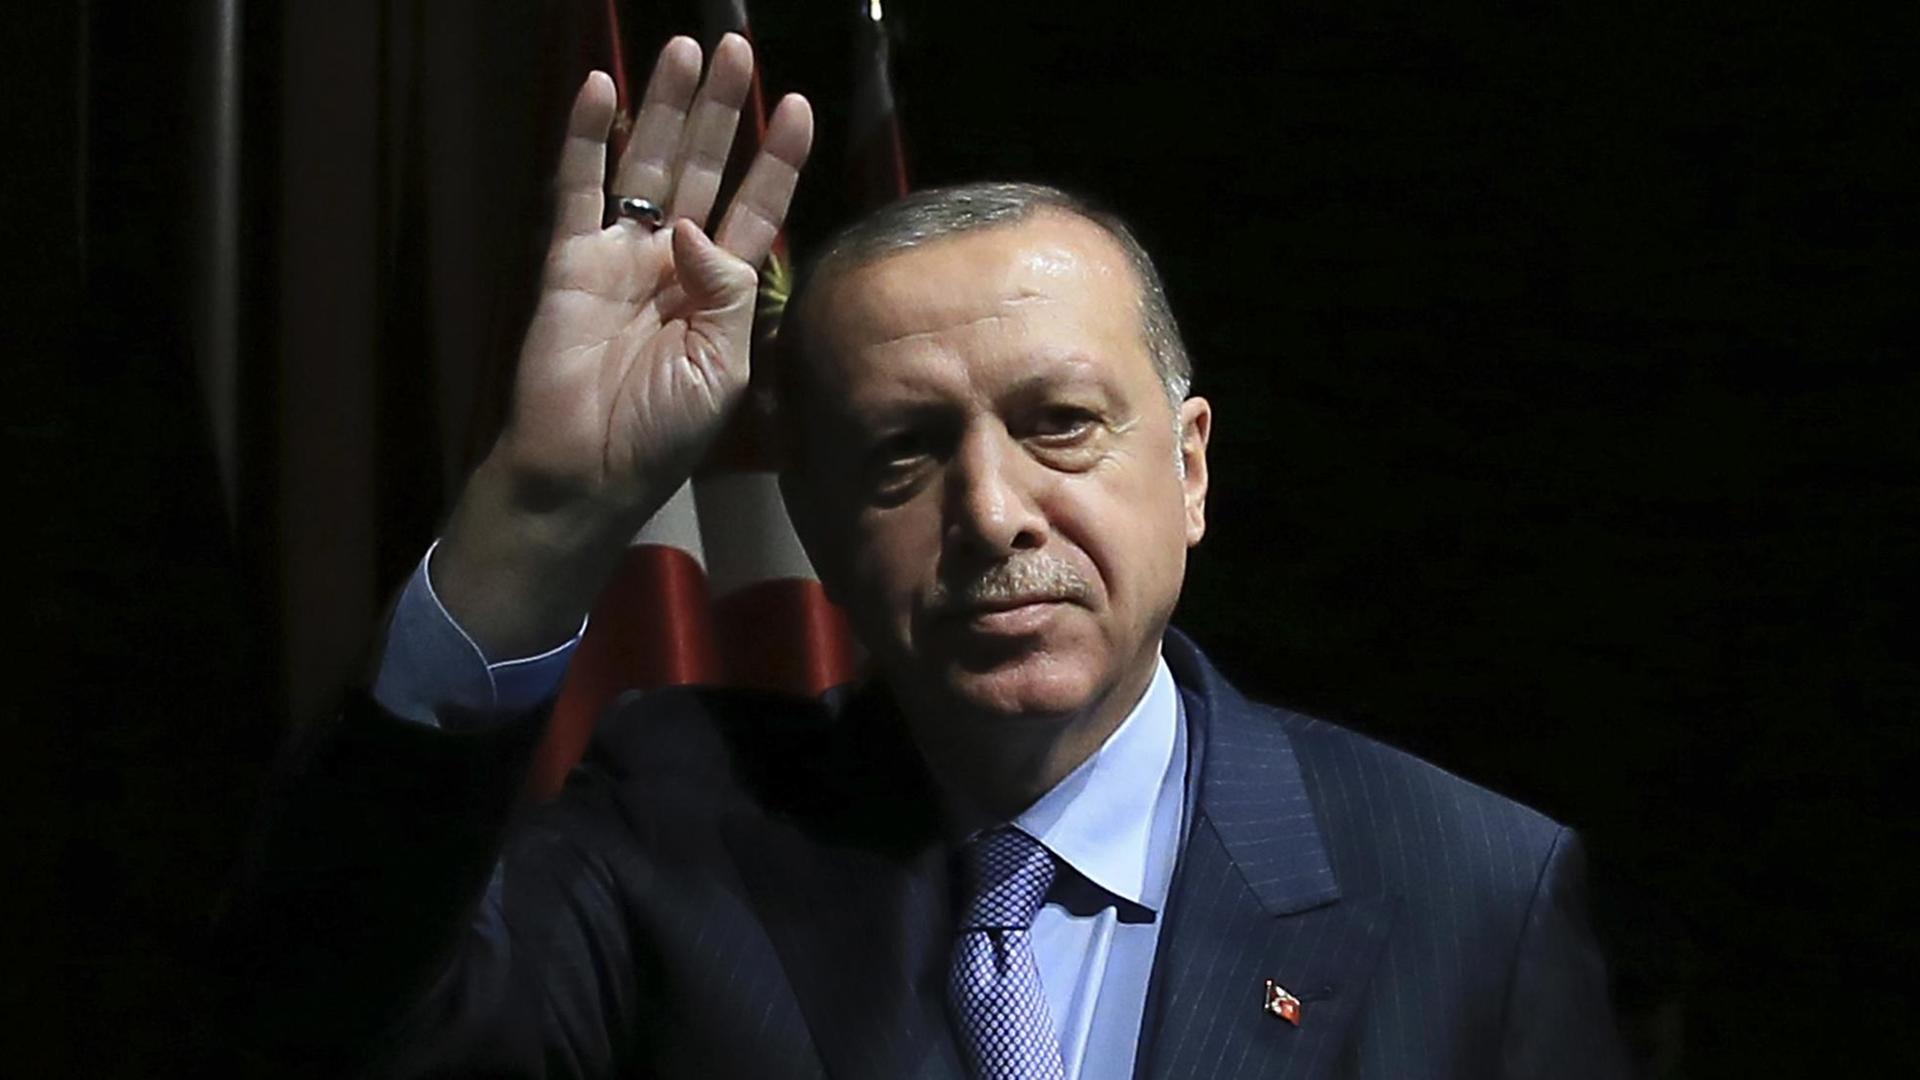 Der türkische Präsident Recep Tayyip Erdogan bei einer Wahlkampfveranstaltung in Ankara